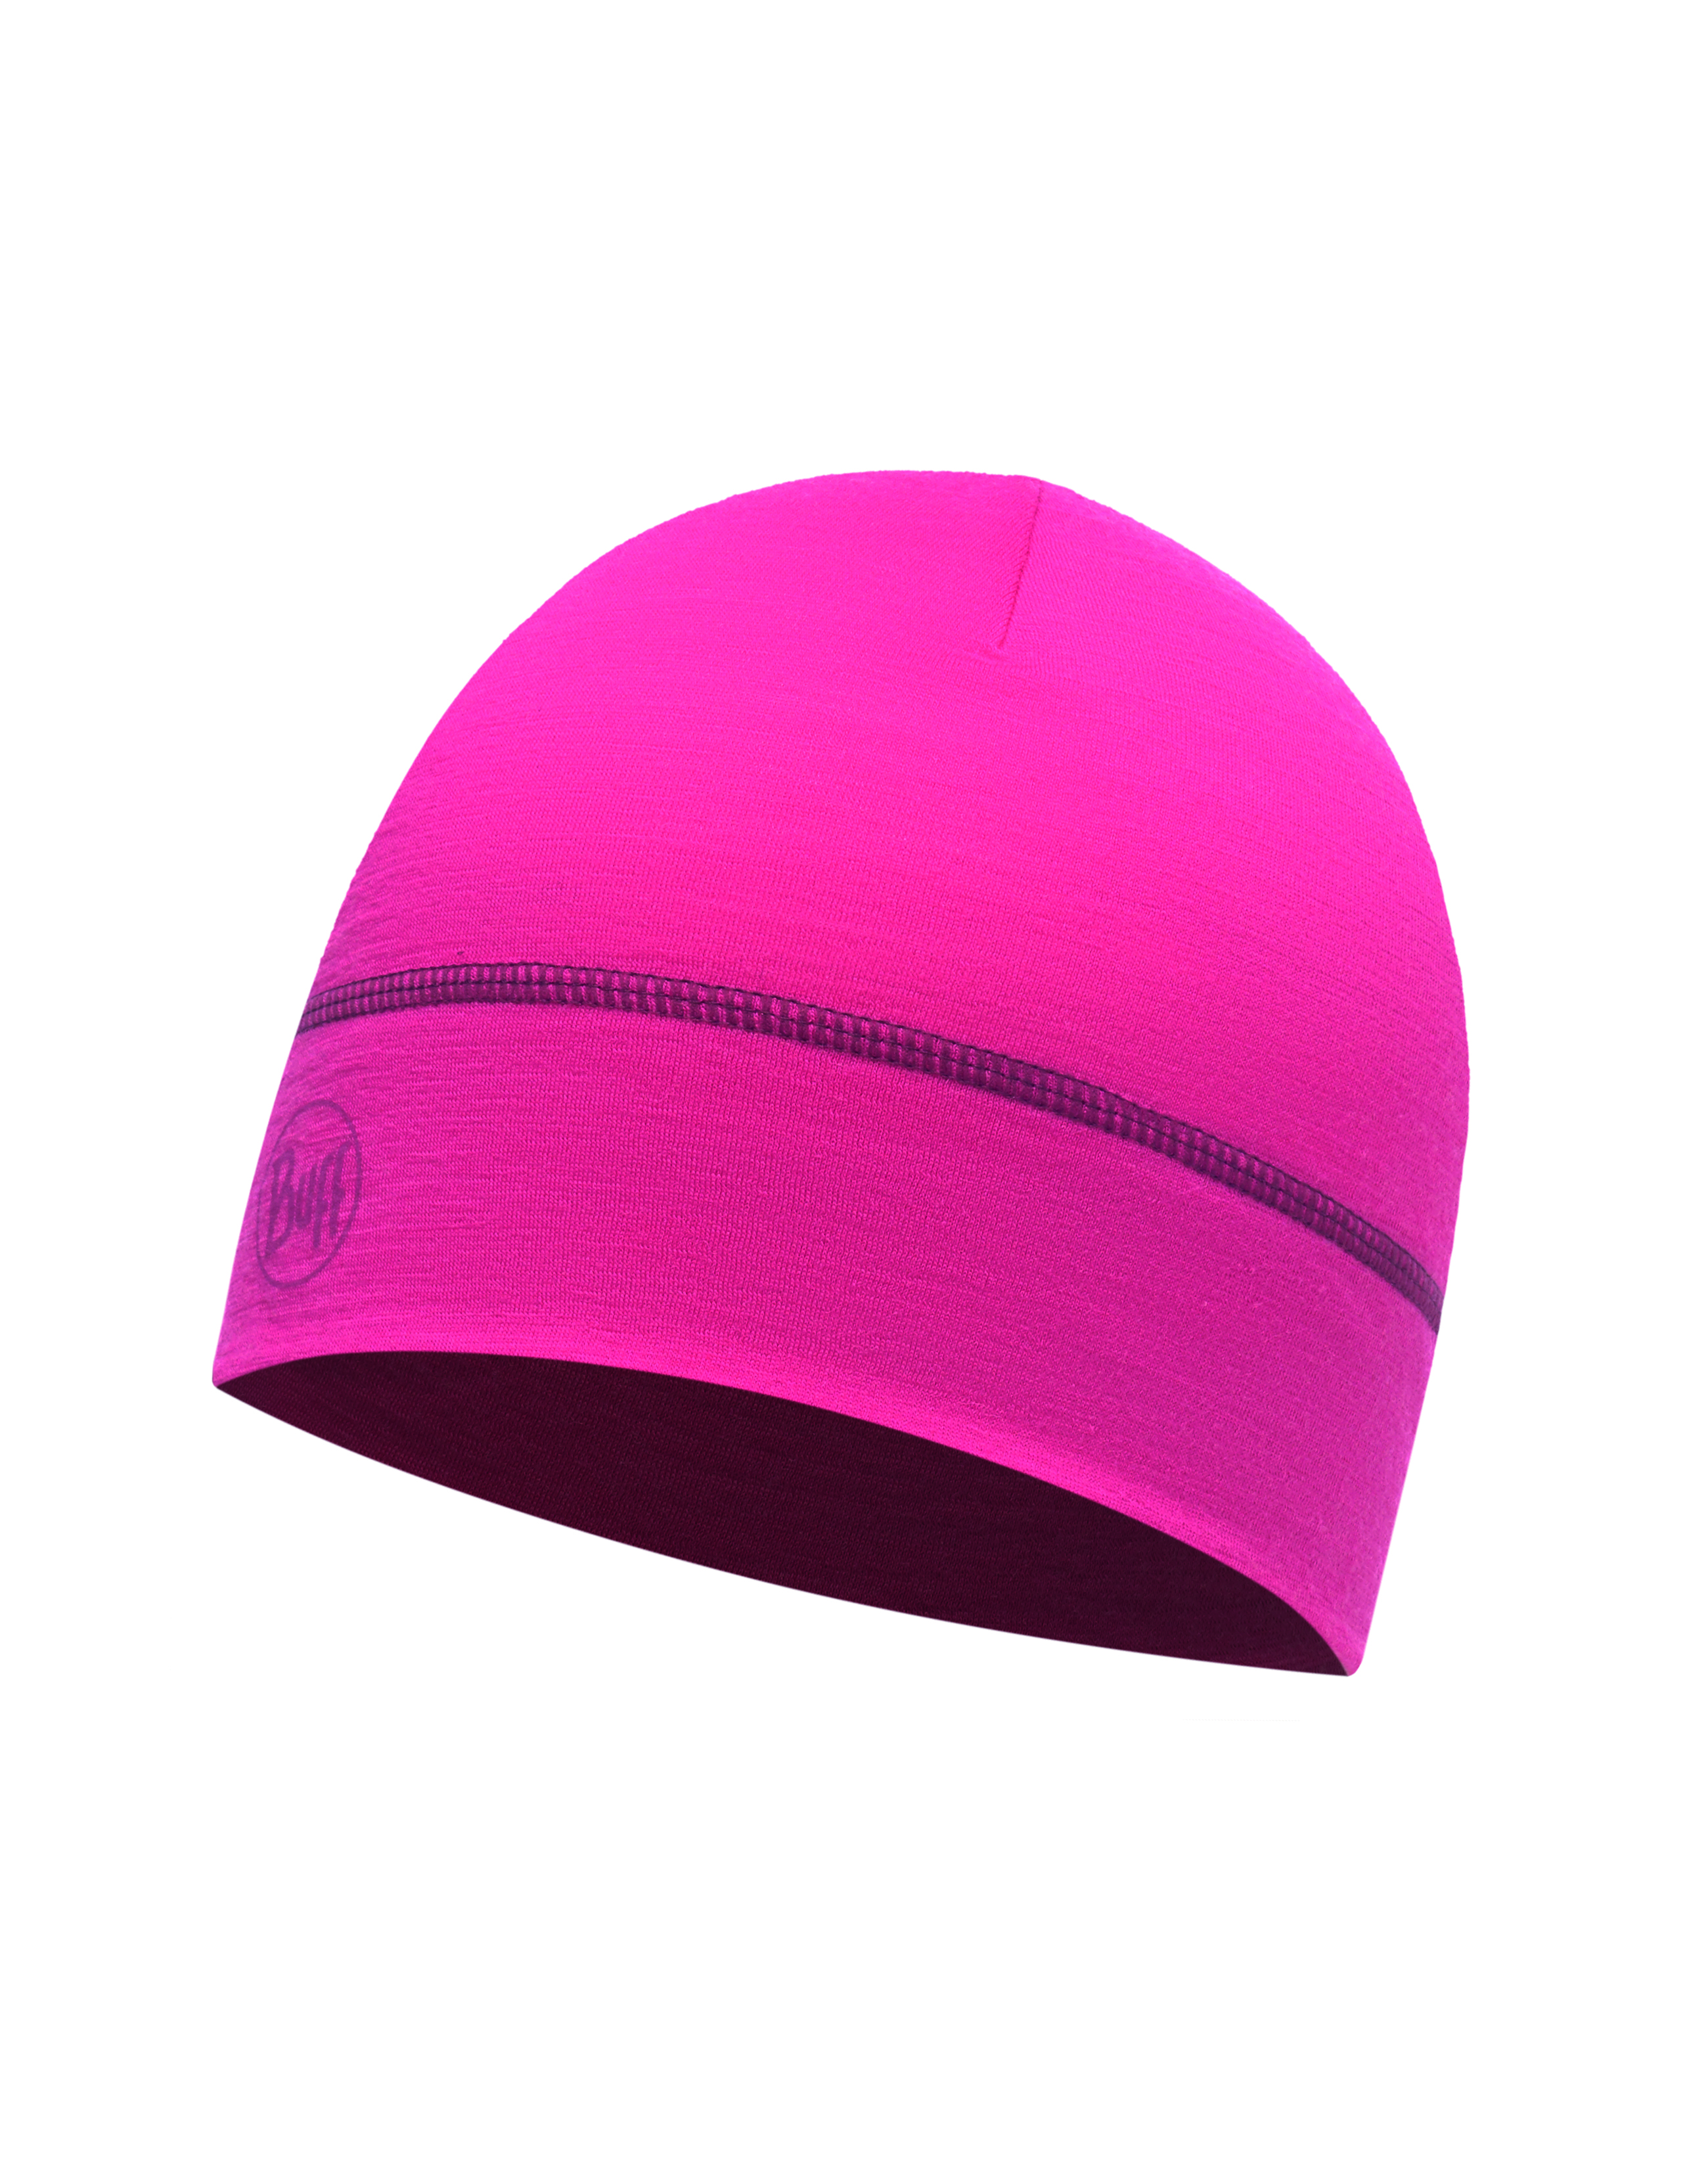 Шапка Buff Lightweight Merino Wool 1 Layer Hat Solid Wild Pink